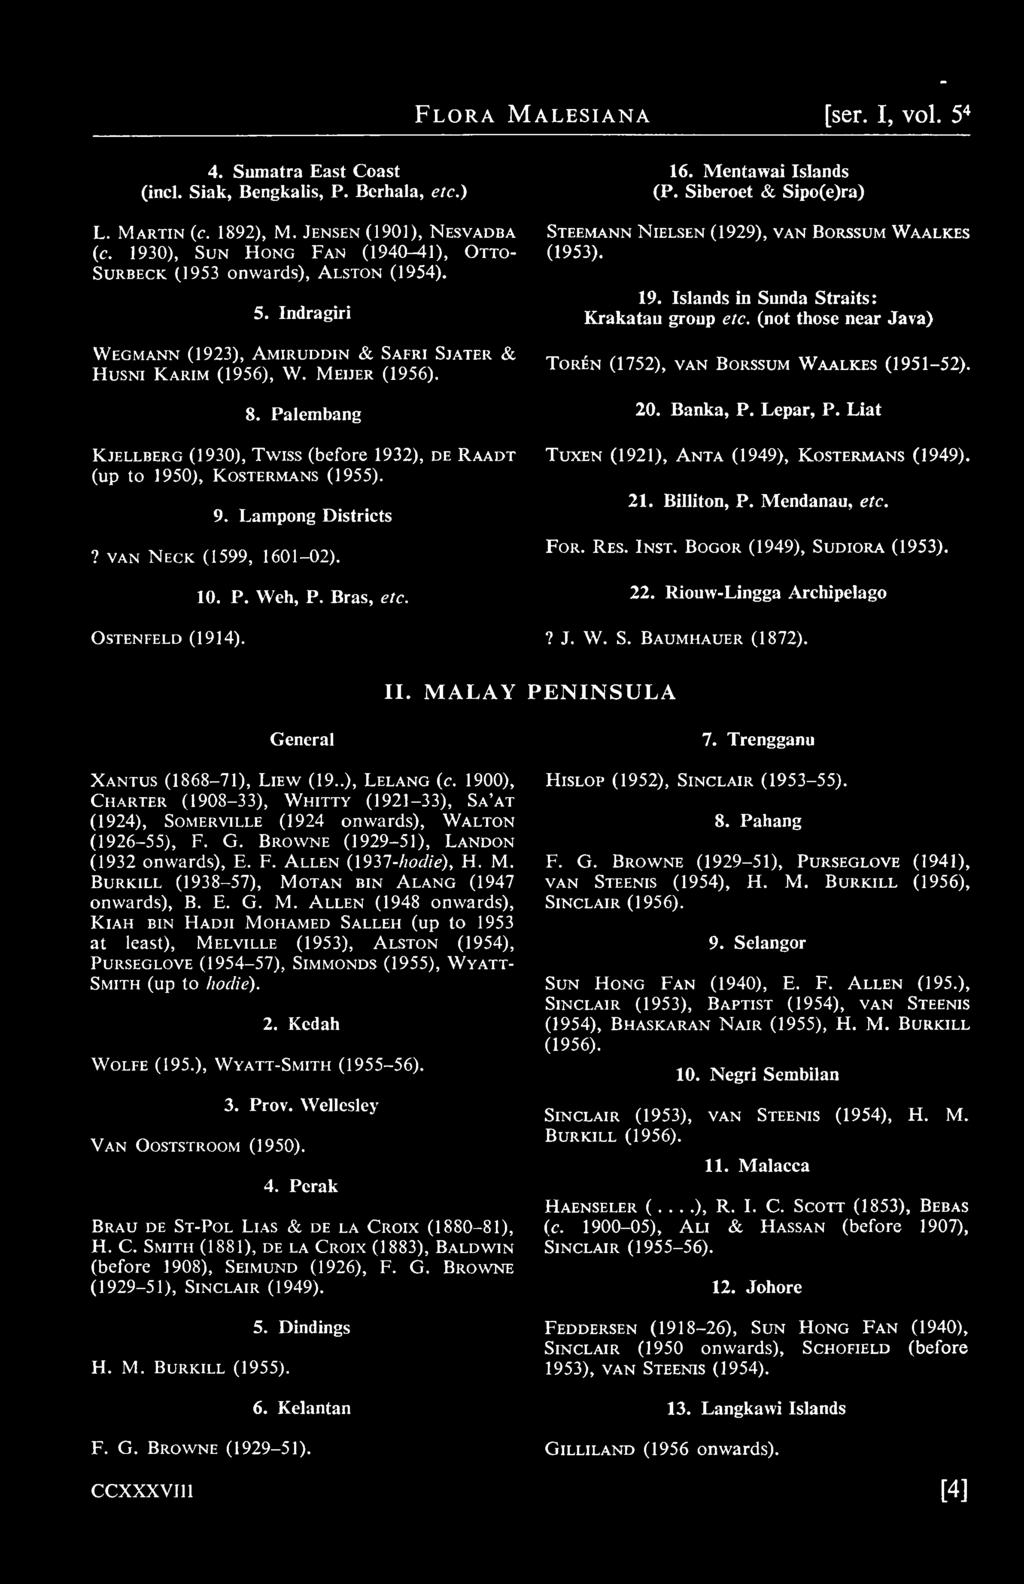 Palembang Kjellberg (1930), Twiss (before 1932), de Raadt (up to 1950), Kostermans (1955). 9. Lampong Districts? VAN Neck (1599, 1601-02). 10. P. Weh, P. Bras, etc. 16. Mentawai Islands (P.